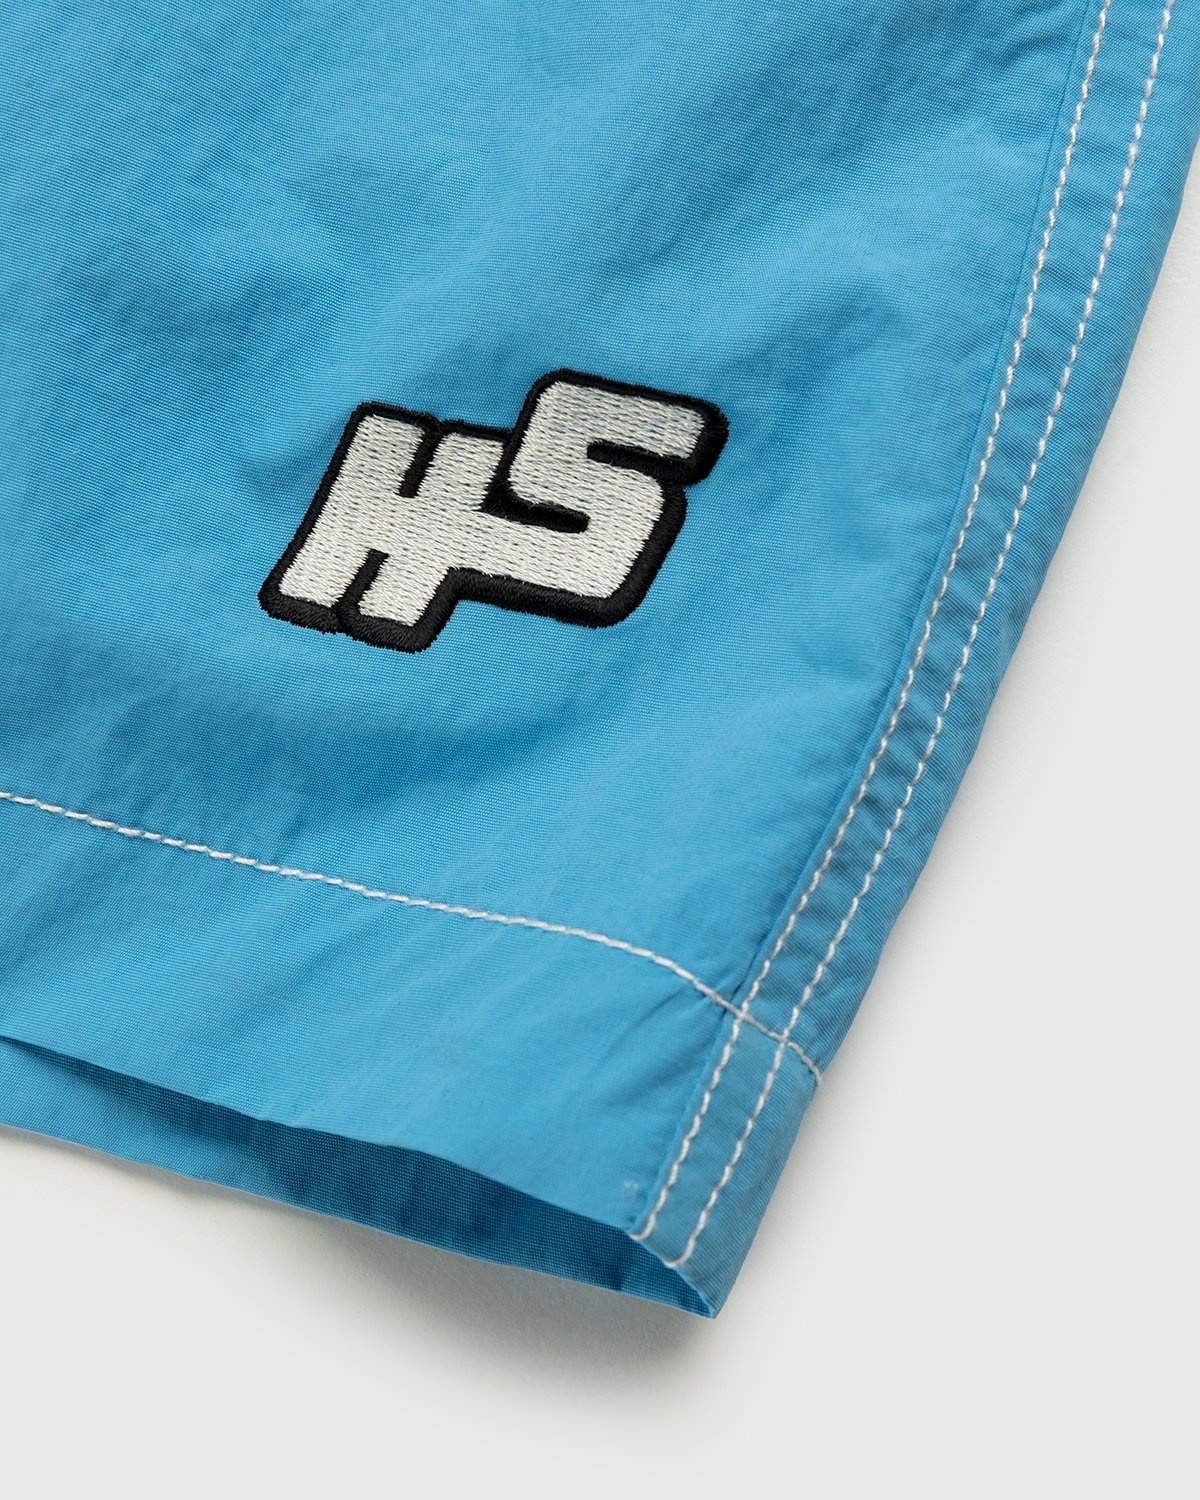 Highsnobiety – Contrast Brushed Nylon Water Shorts Blue - Shorts - Blue - Image 4